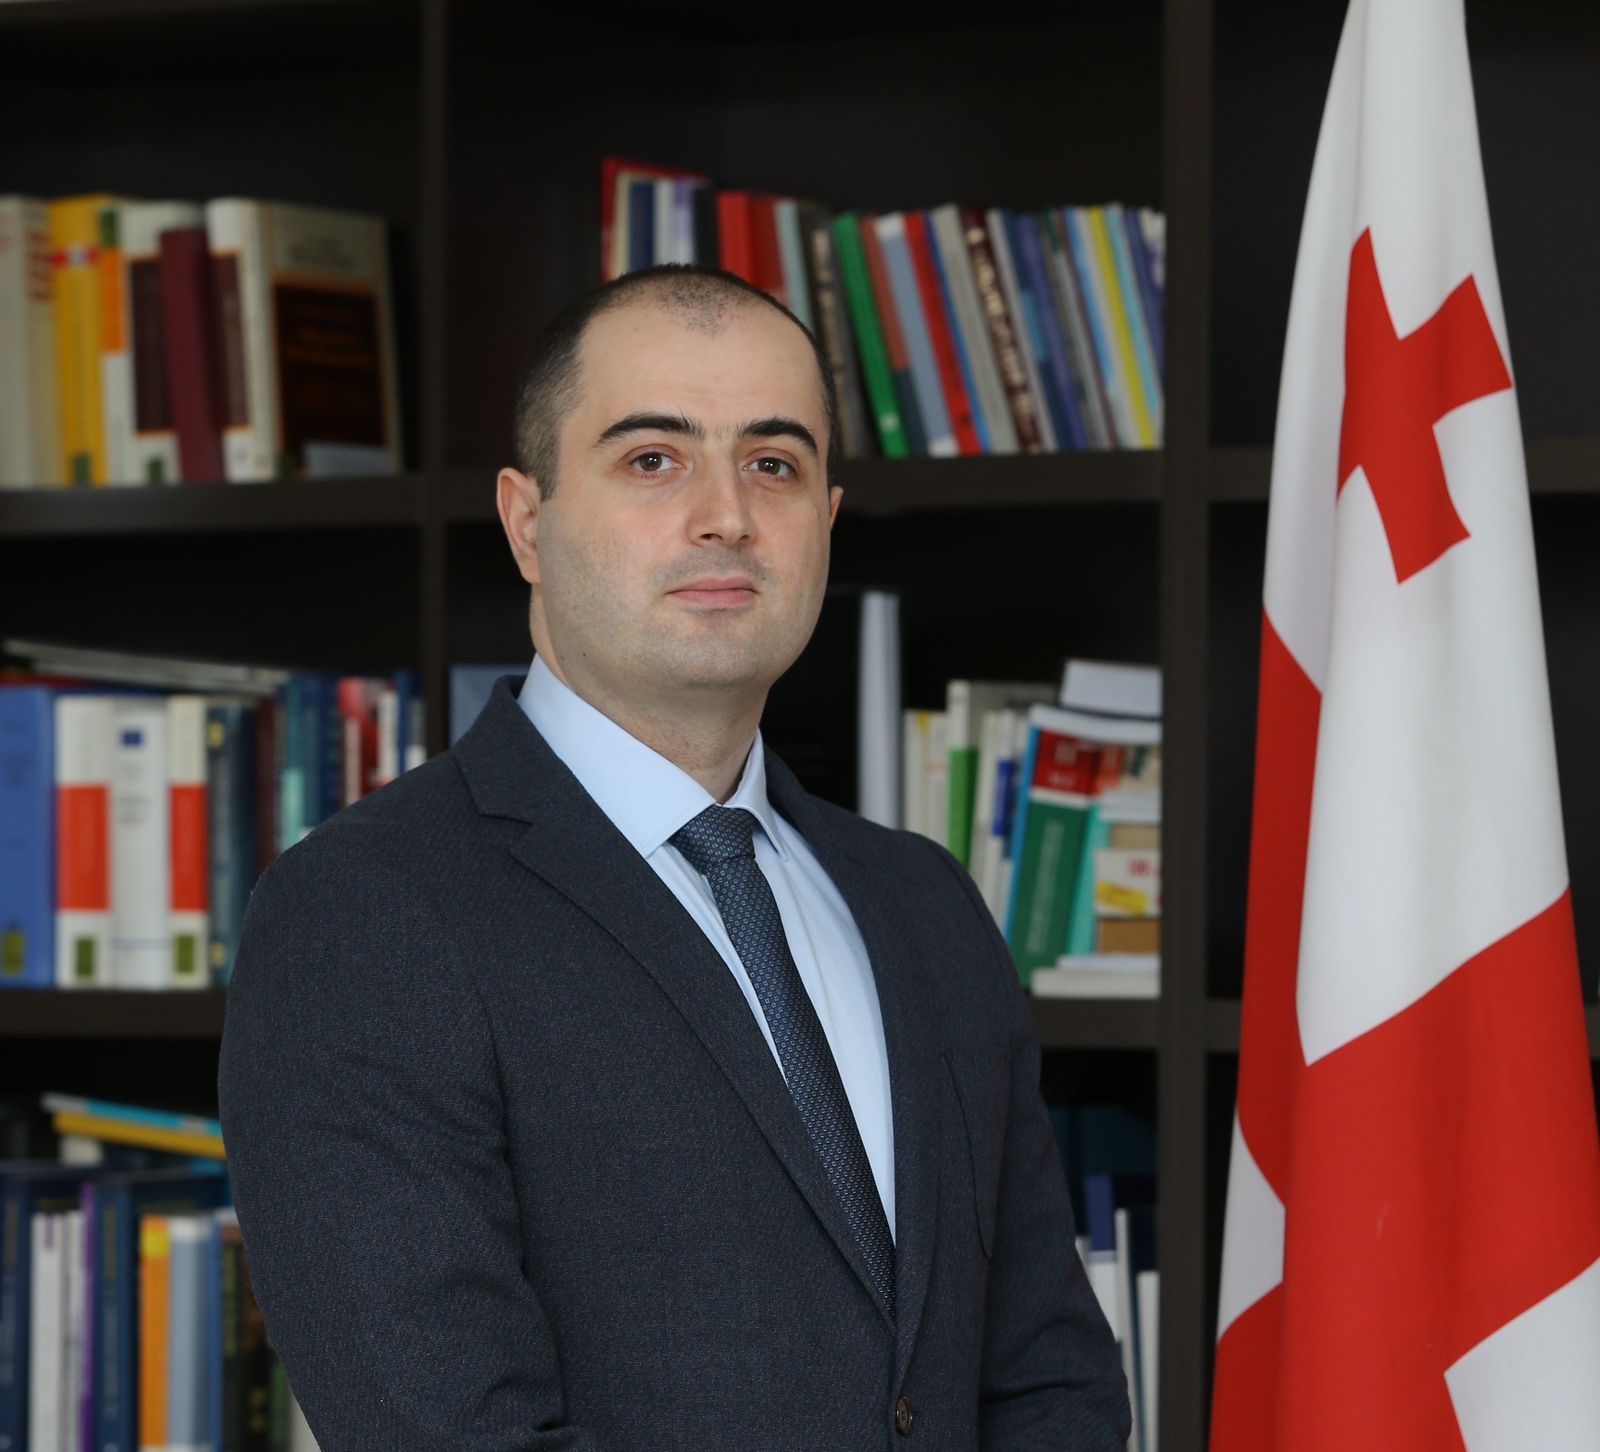 Поздравляем г-на Теймураза Чихрадзе с назначением на должность Главы Бюро государственной службы Грузии